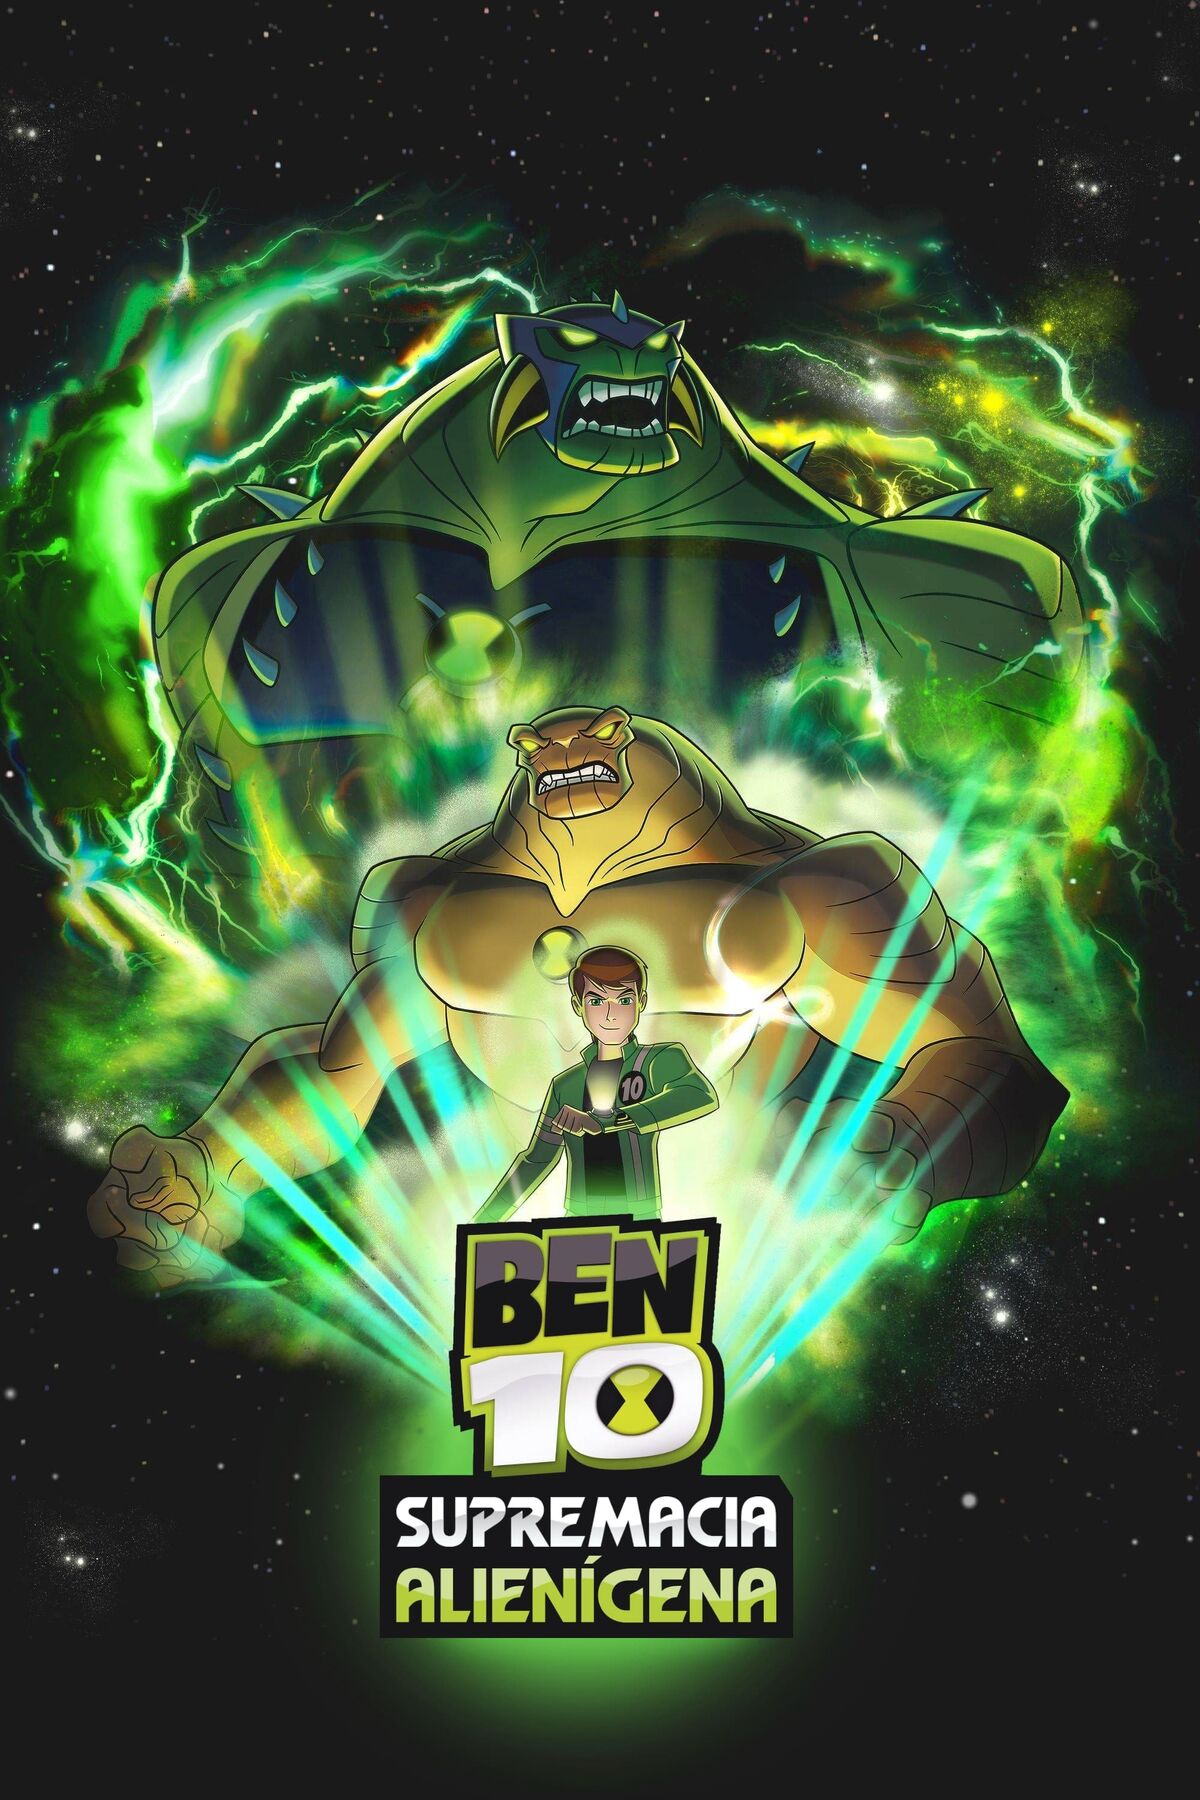 Enormossauro  Ben 10 omniverse, Ben 10 ultimate alien, Ben 10 força  alienígena